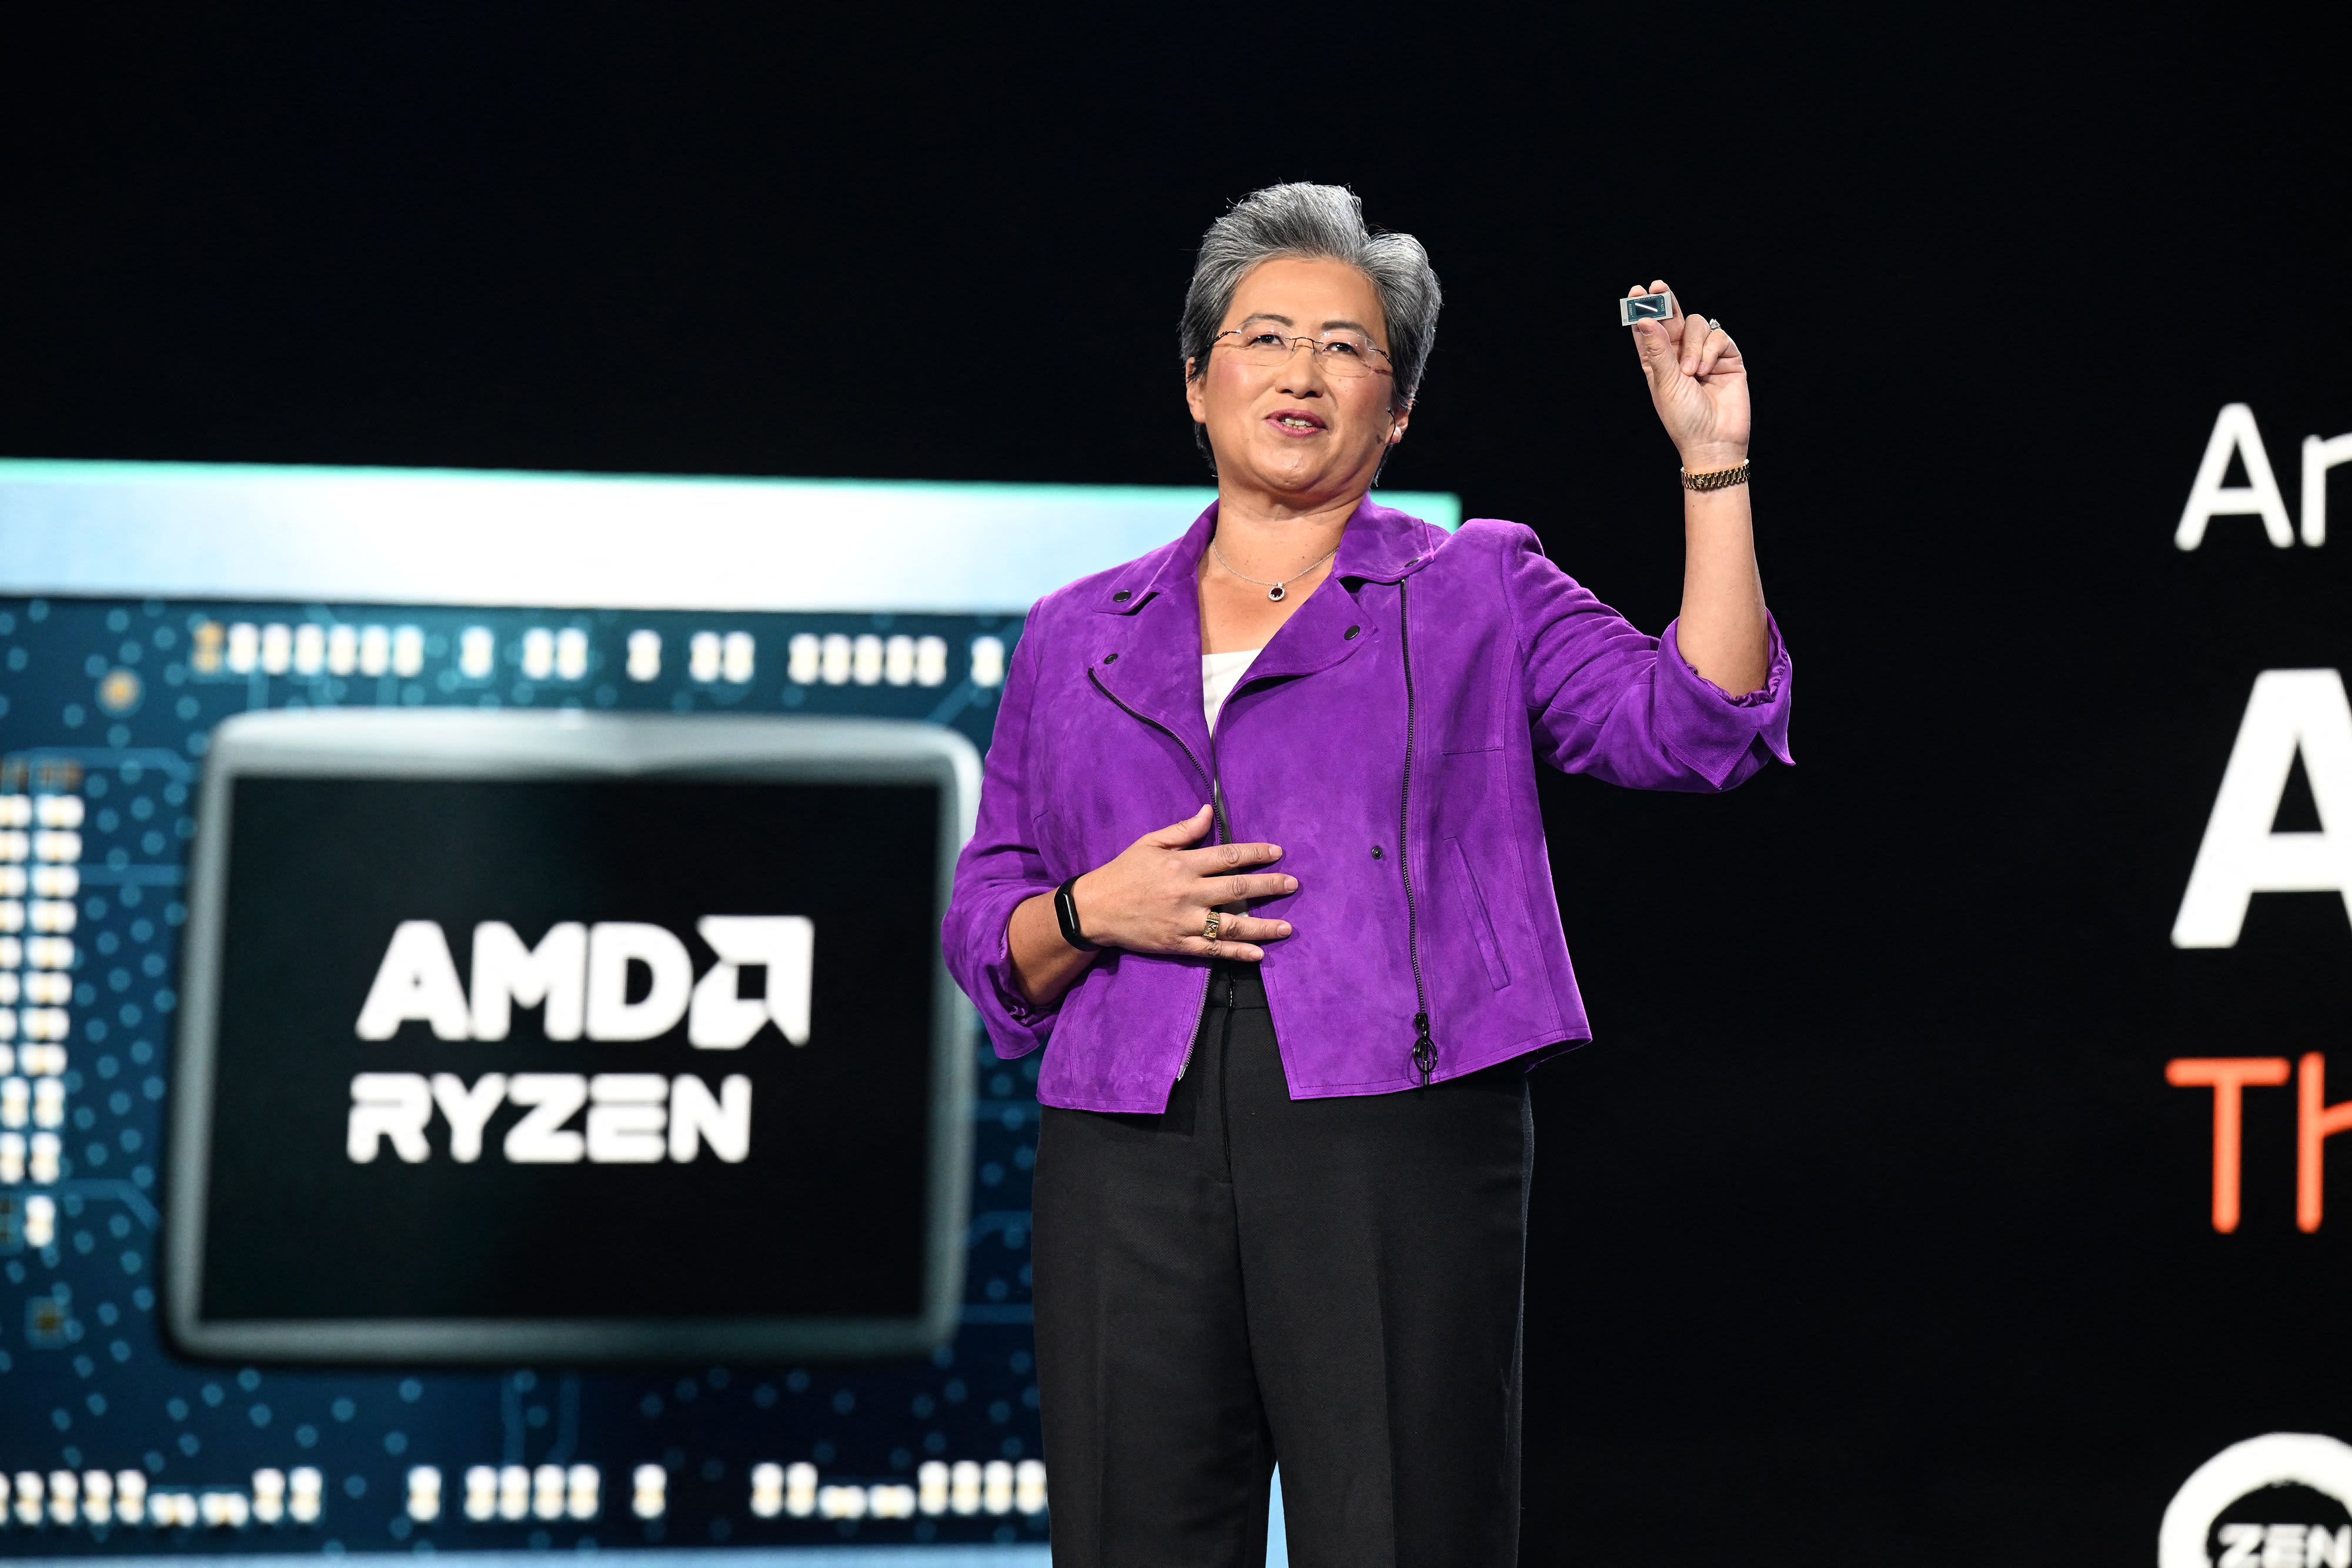 AMD forventer at sælge chips til kunstig intelligens til en værdi af 2 mia. dollars næste år